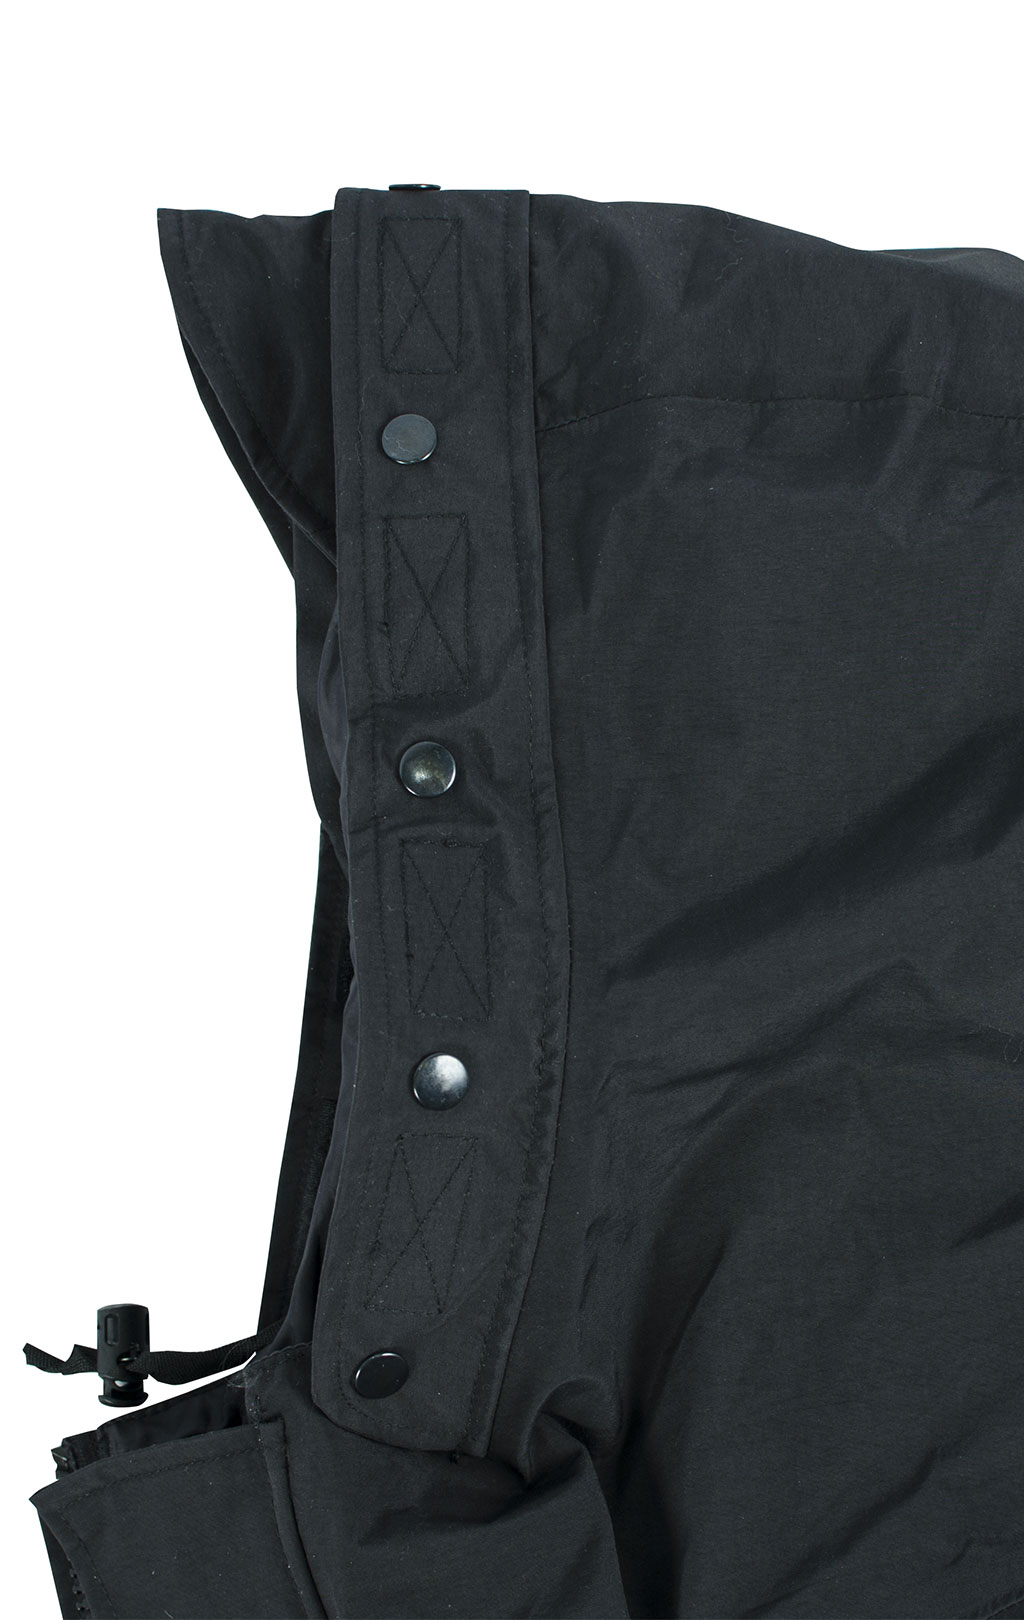 Куртка непромокаемая Tru-Spec/Guardian Spirit мембрана ecwcs с подстёжкой флис black 